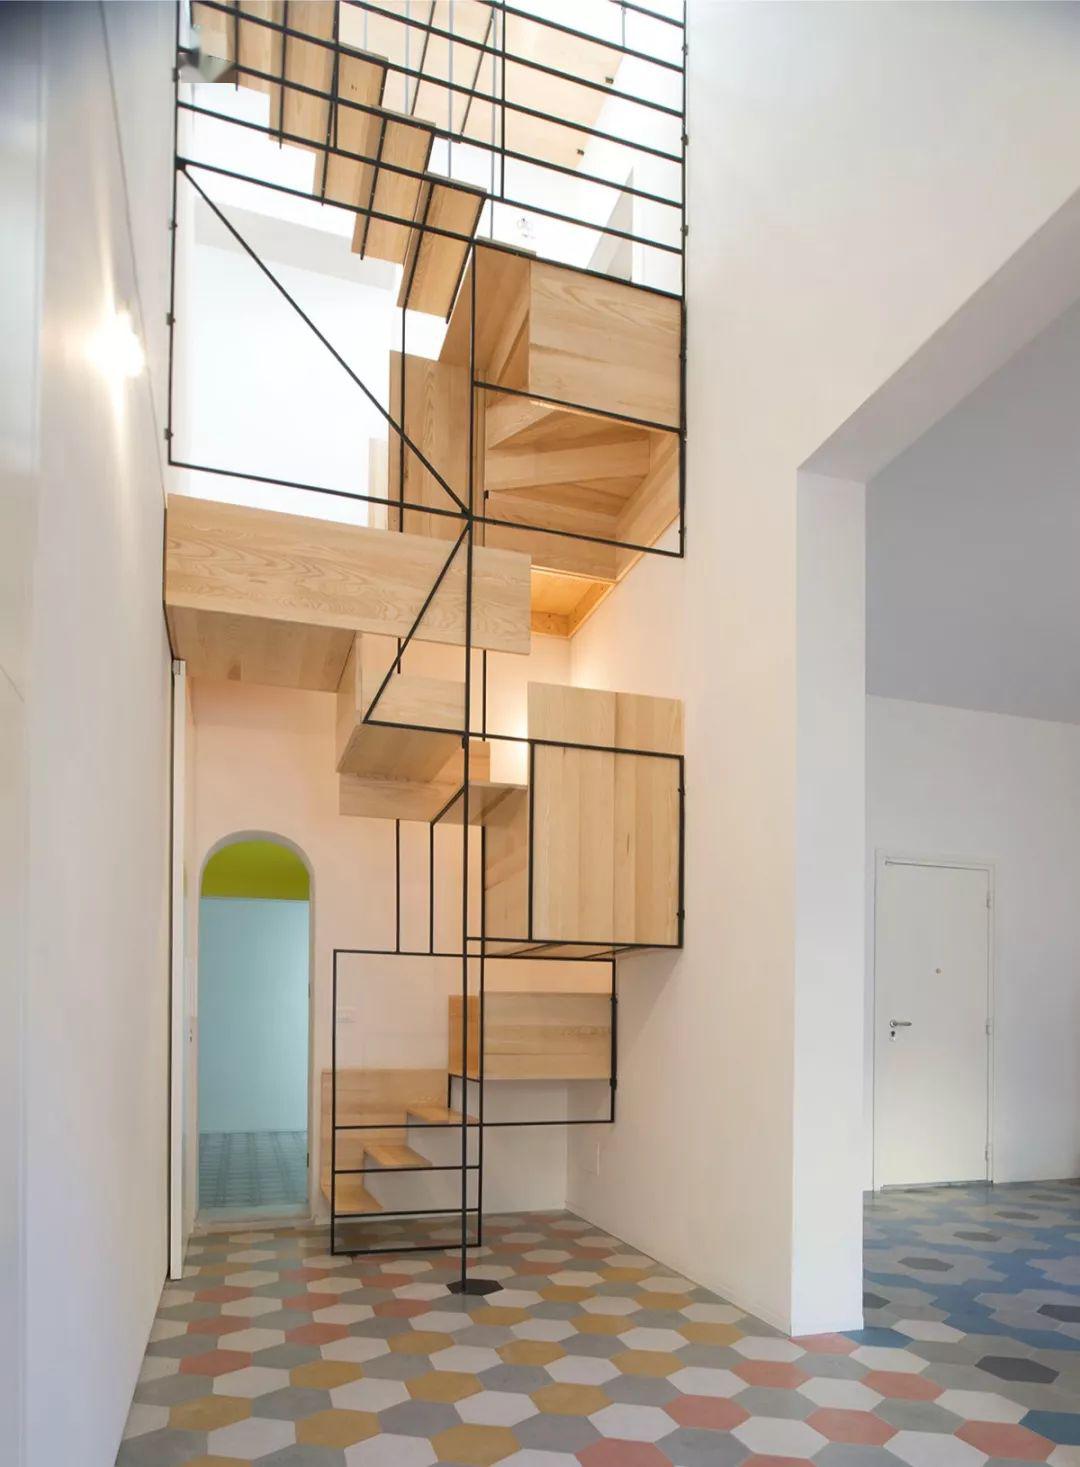 有时候简单的就是最好的 简单的材质加上简单的线条 反而让楼梯变成了